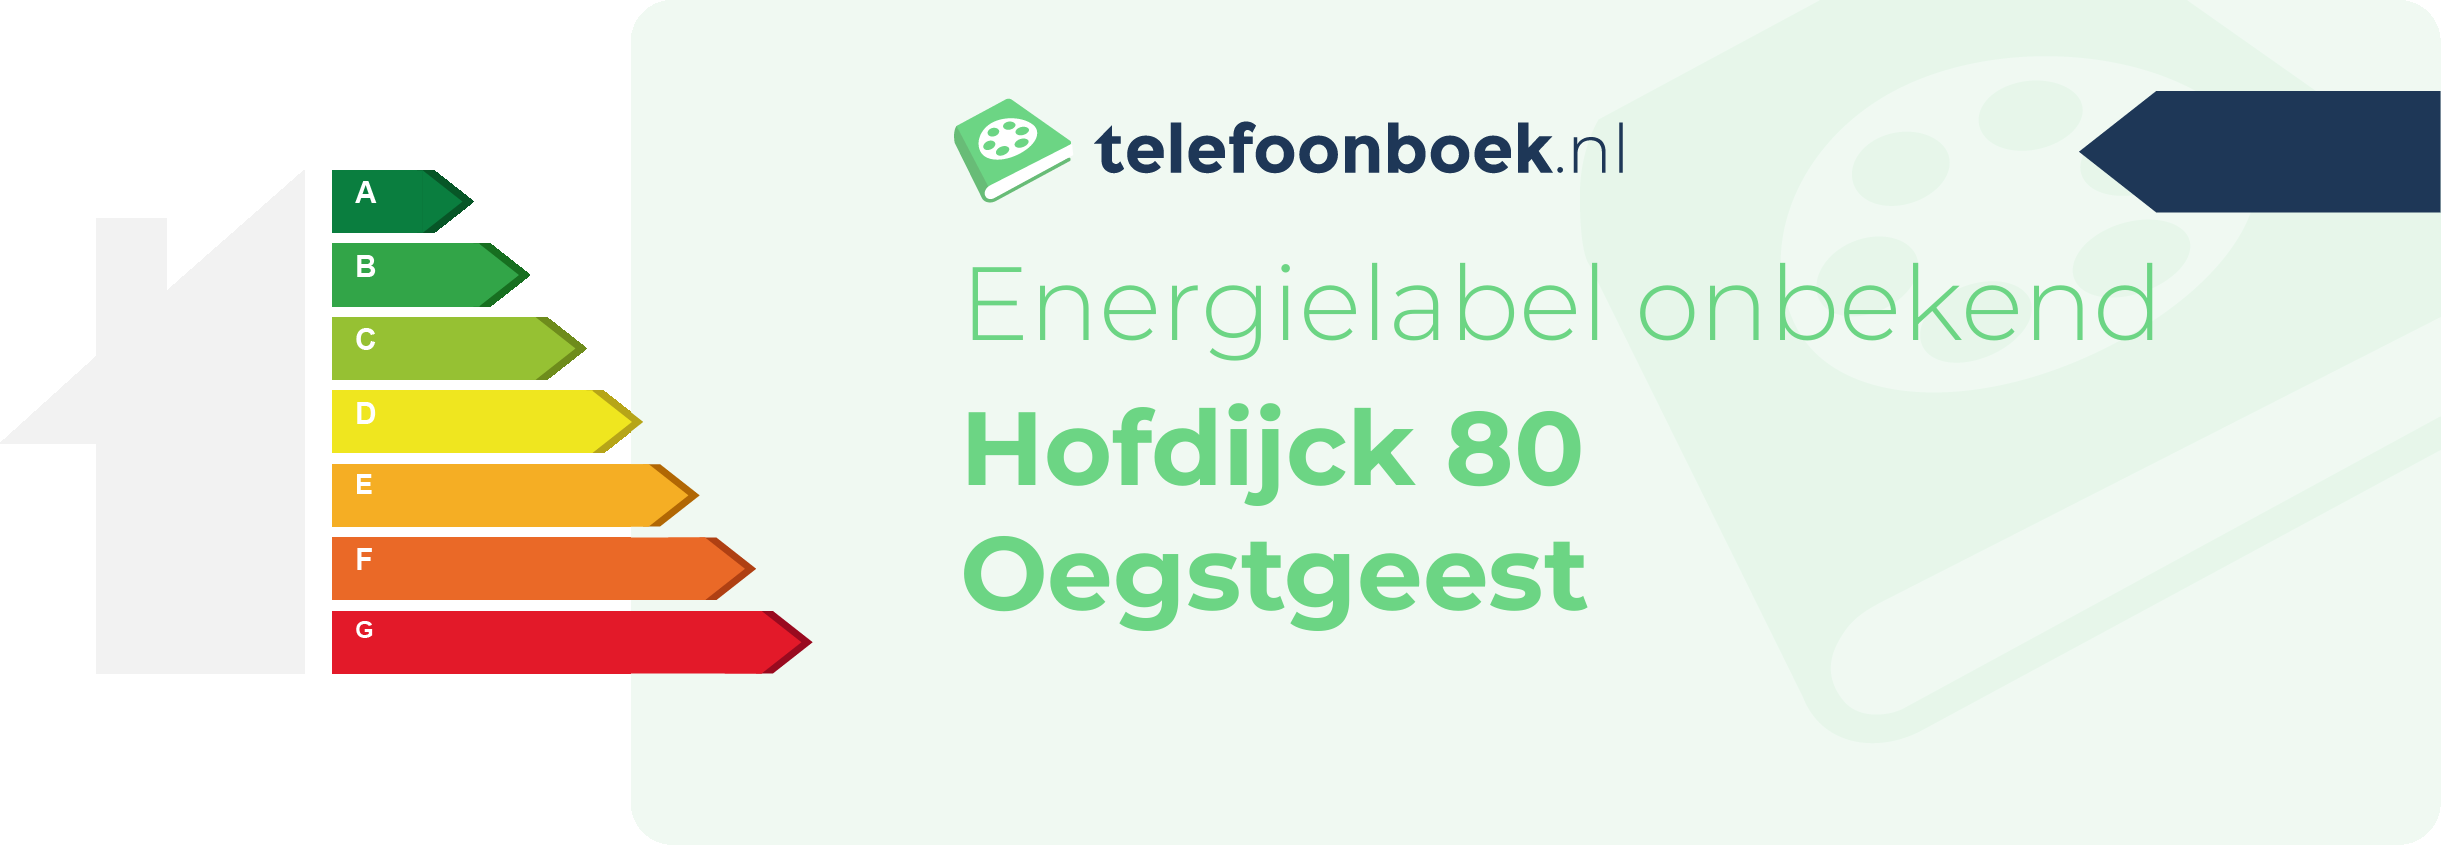 Energielabel Hofdijck 80 Oegstgeest